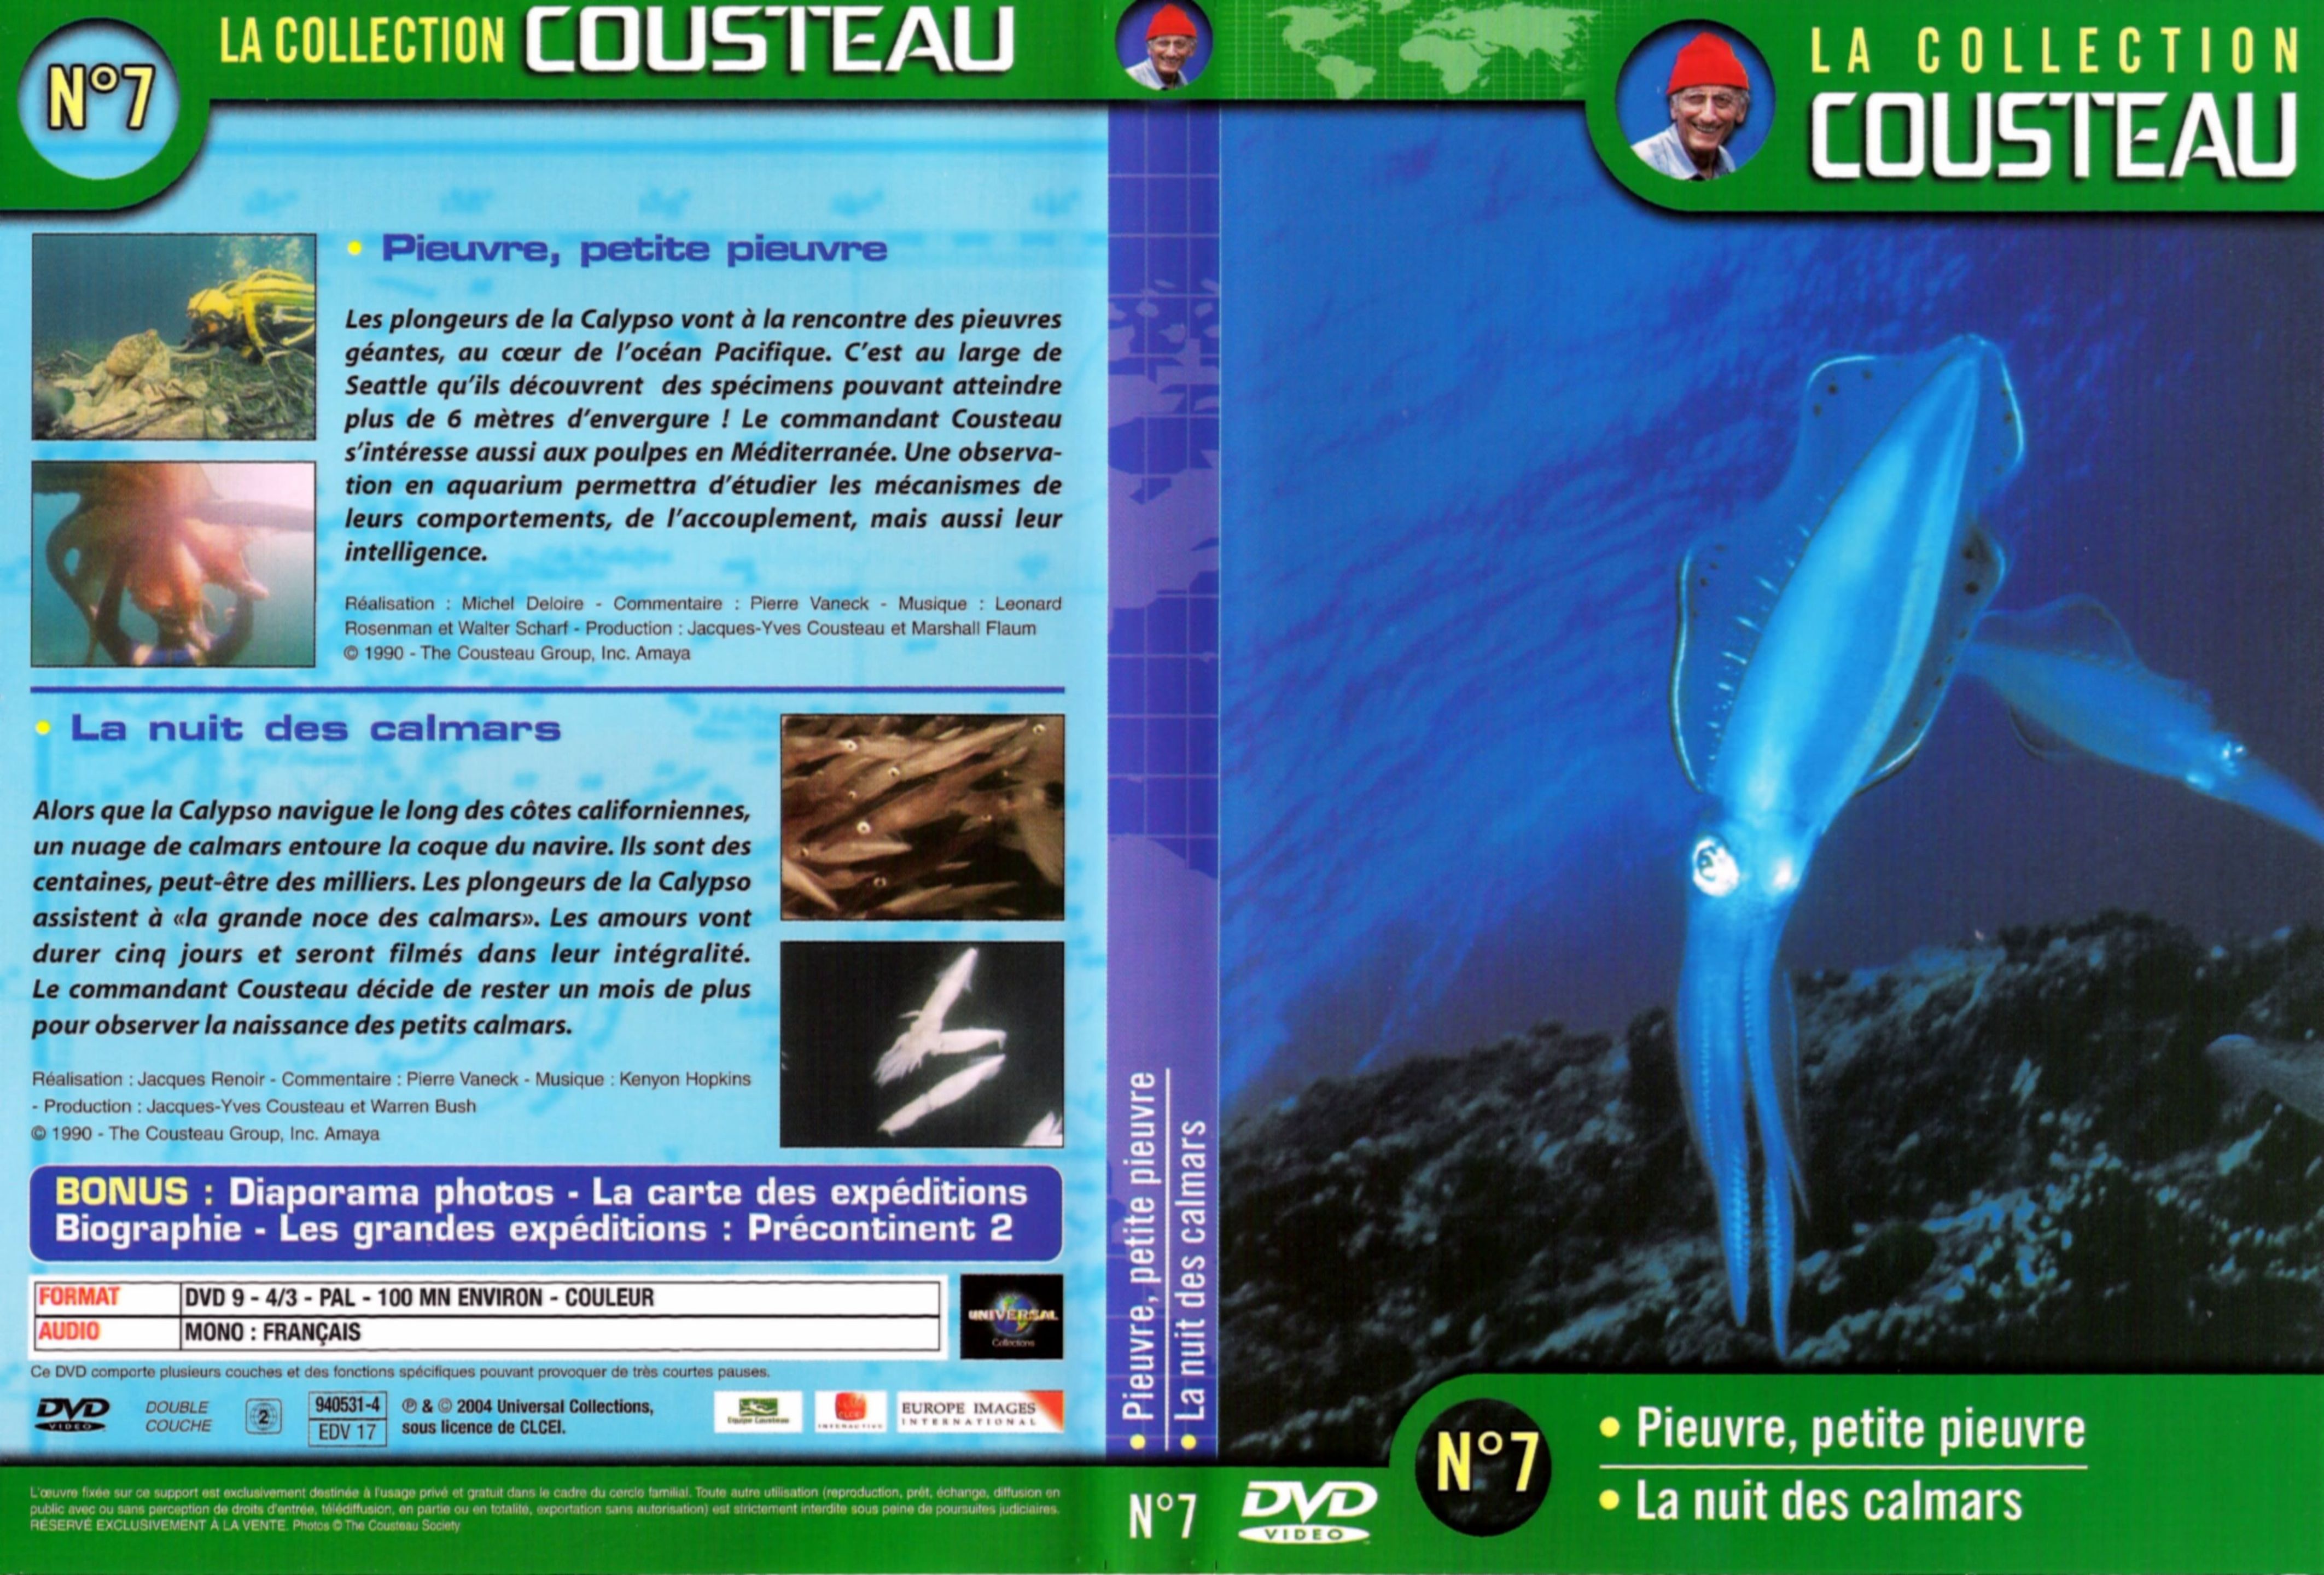 Jaquette DVD Cousteau Collection vol 07